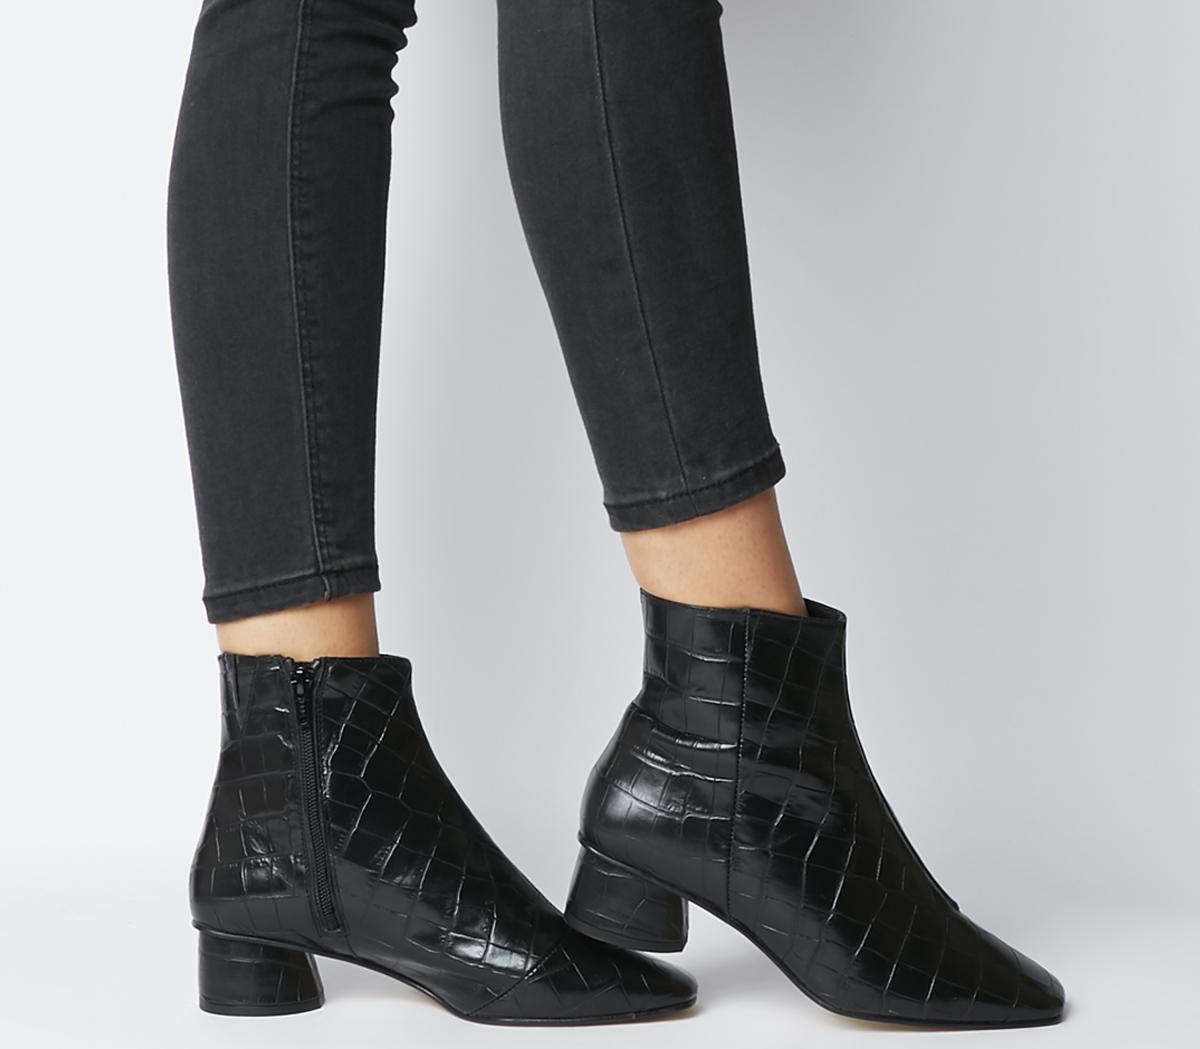 black croc ankle boots